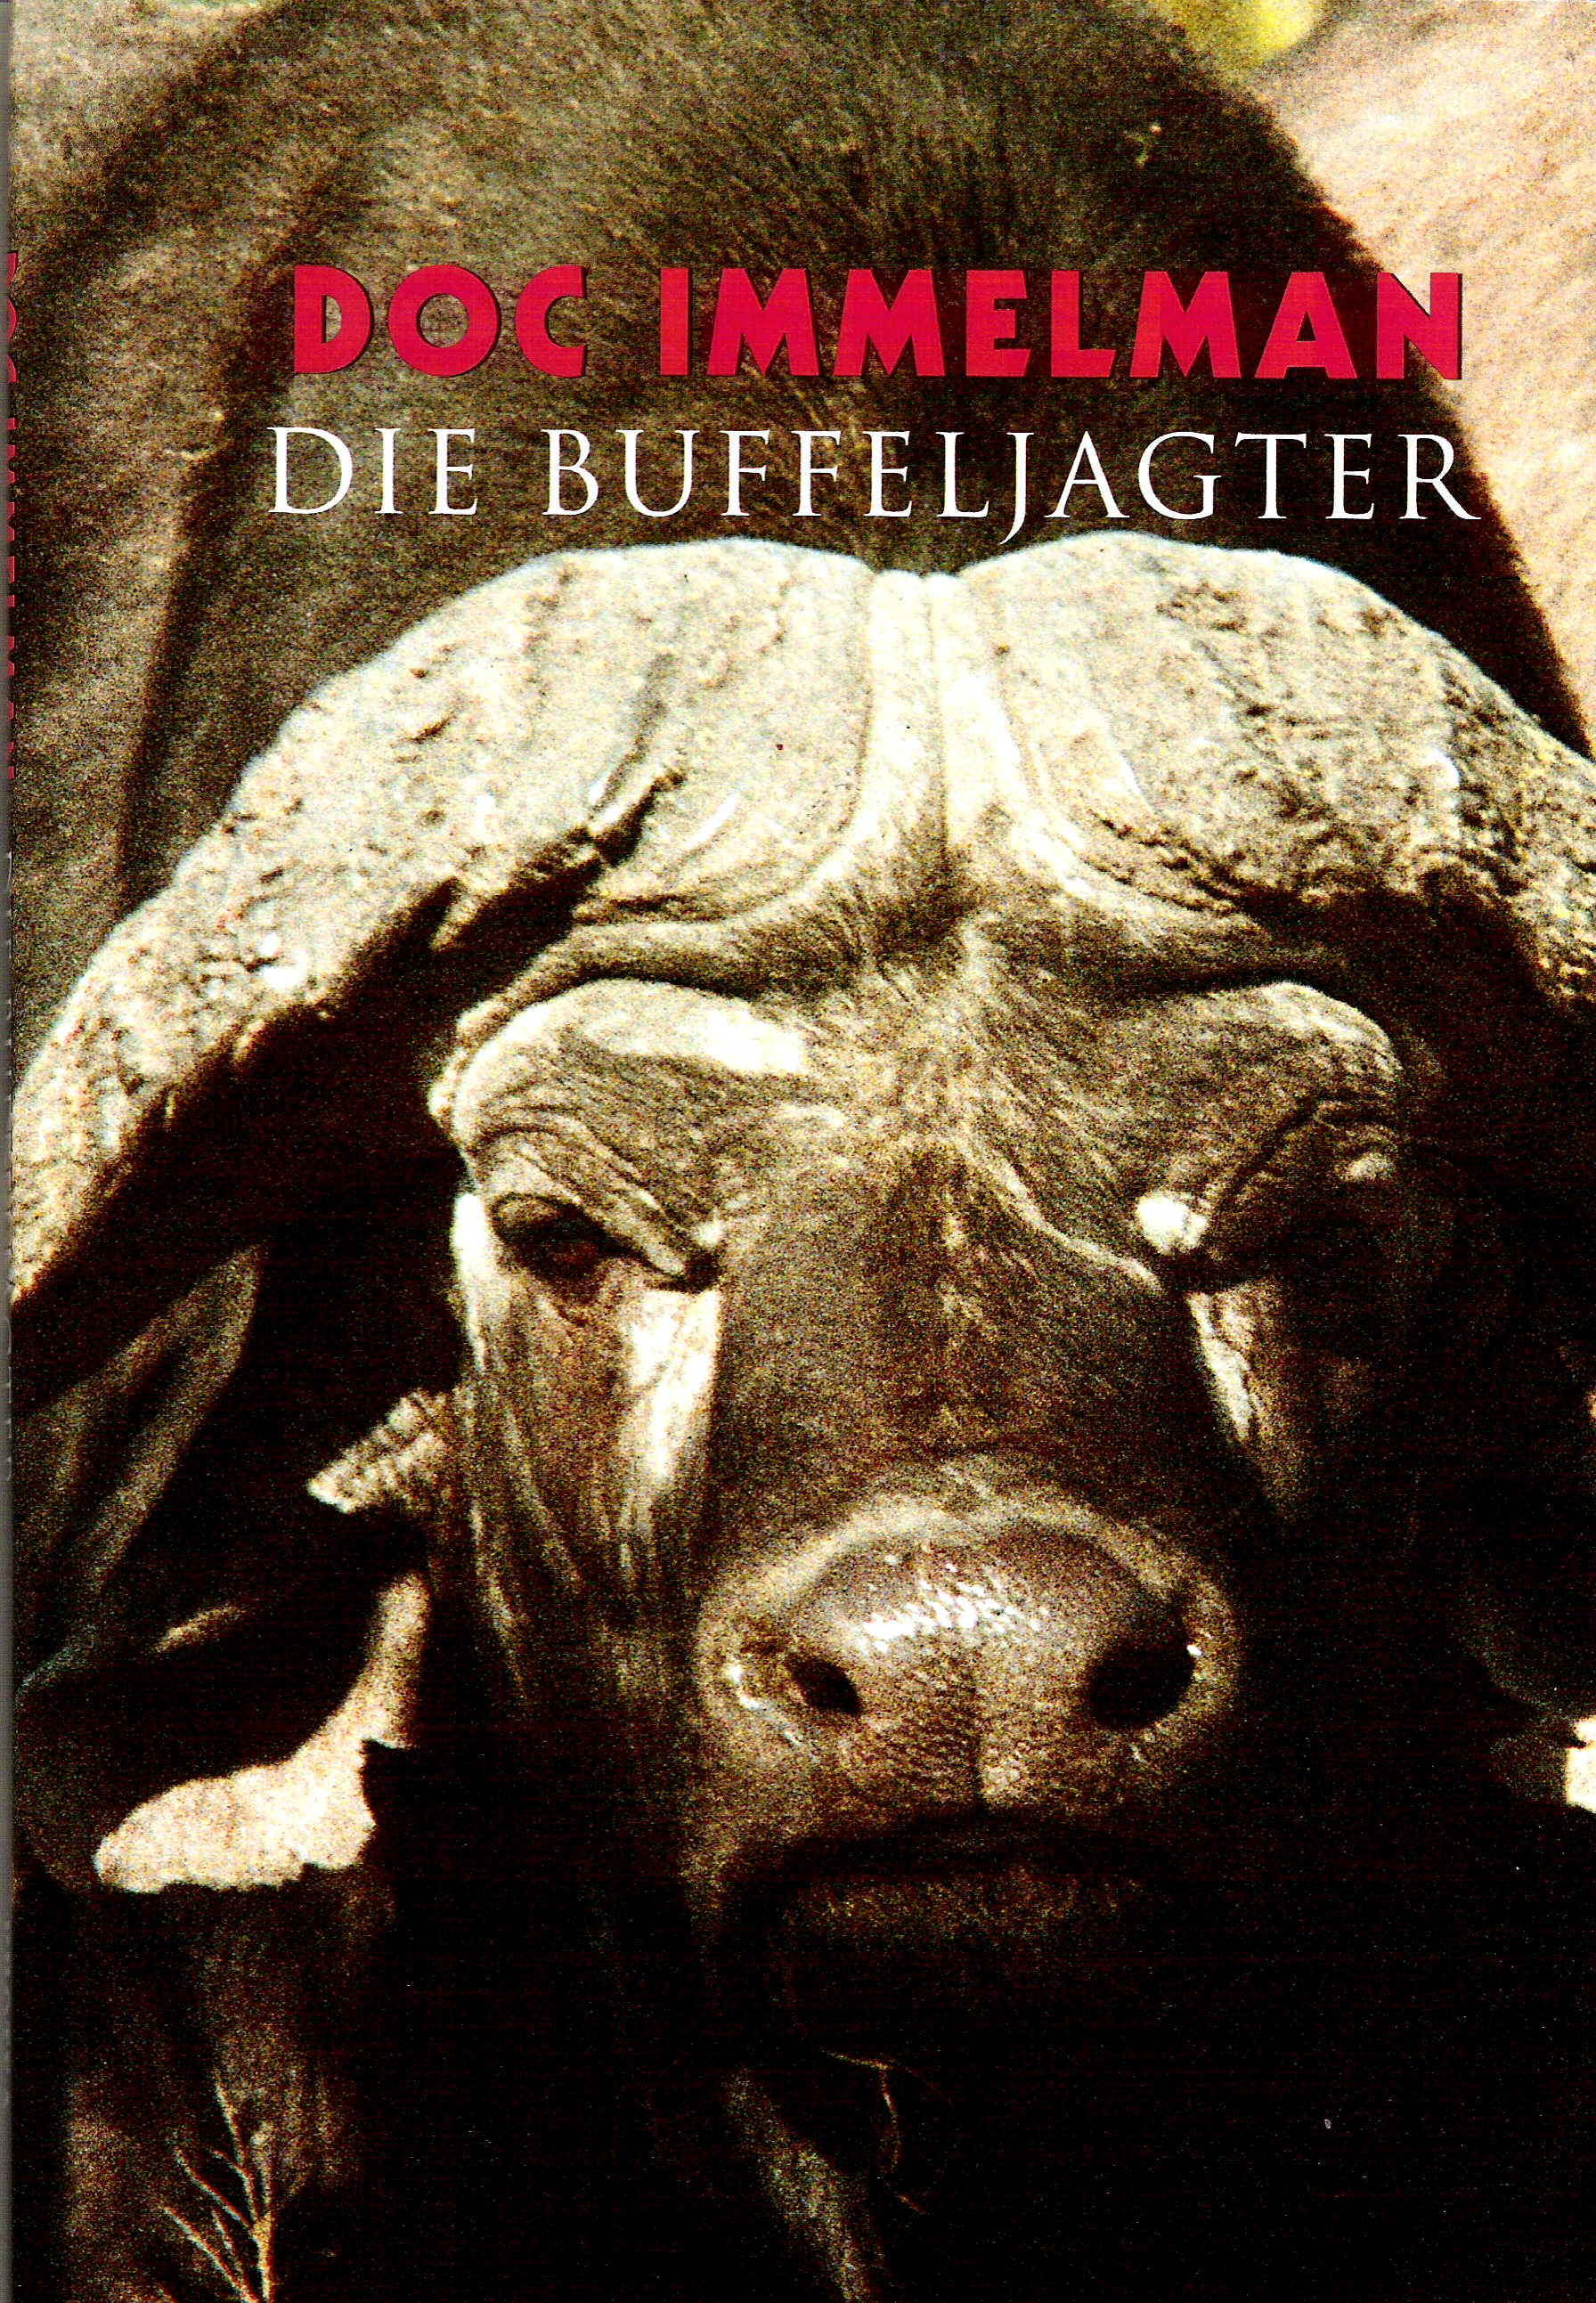 Picture of Die buffeljagter